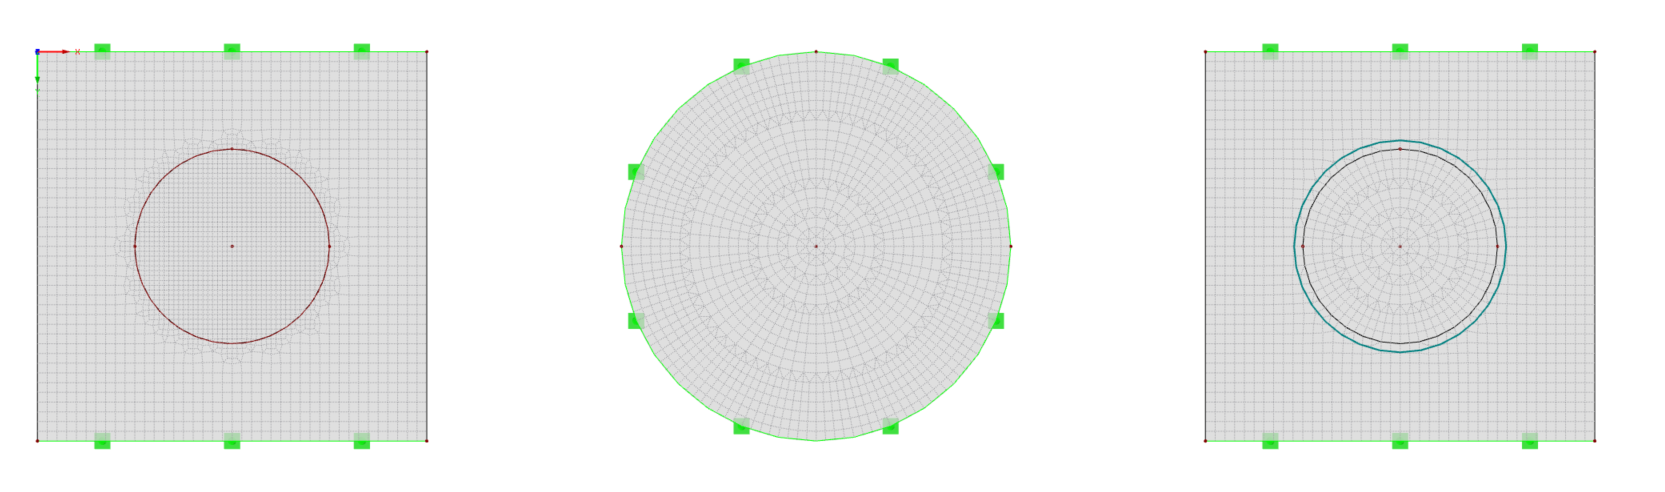 Mallado radial de la geometría de la base